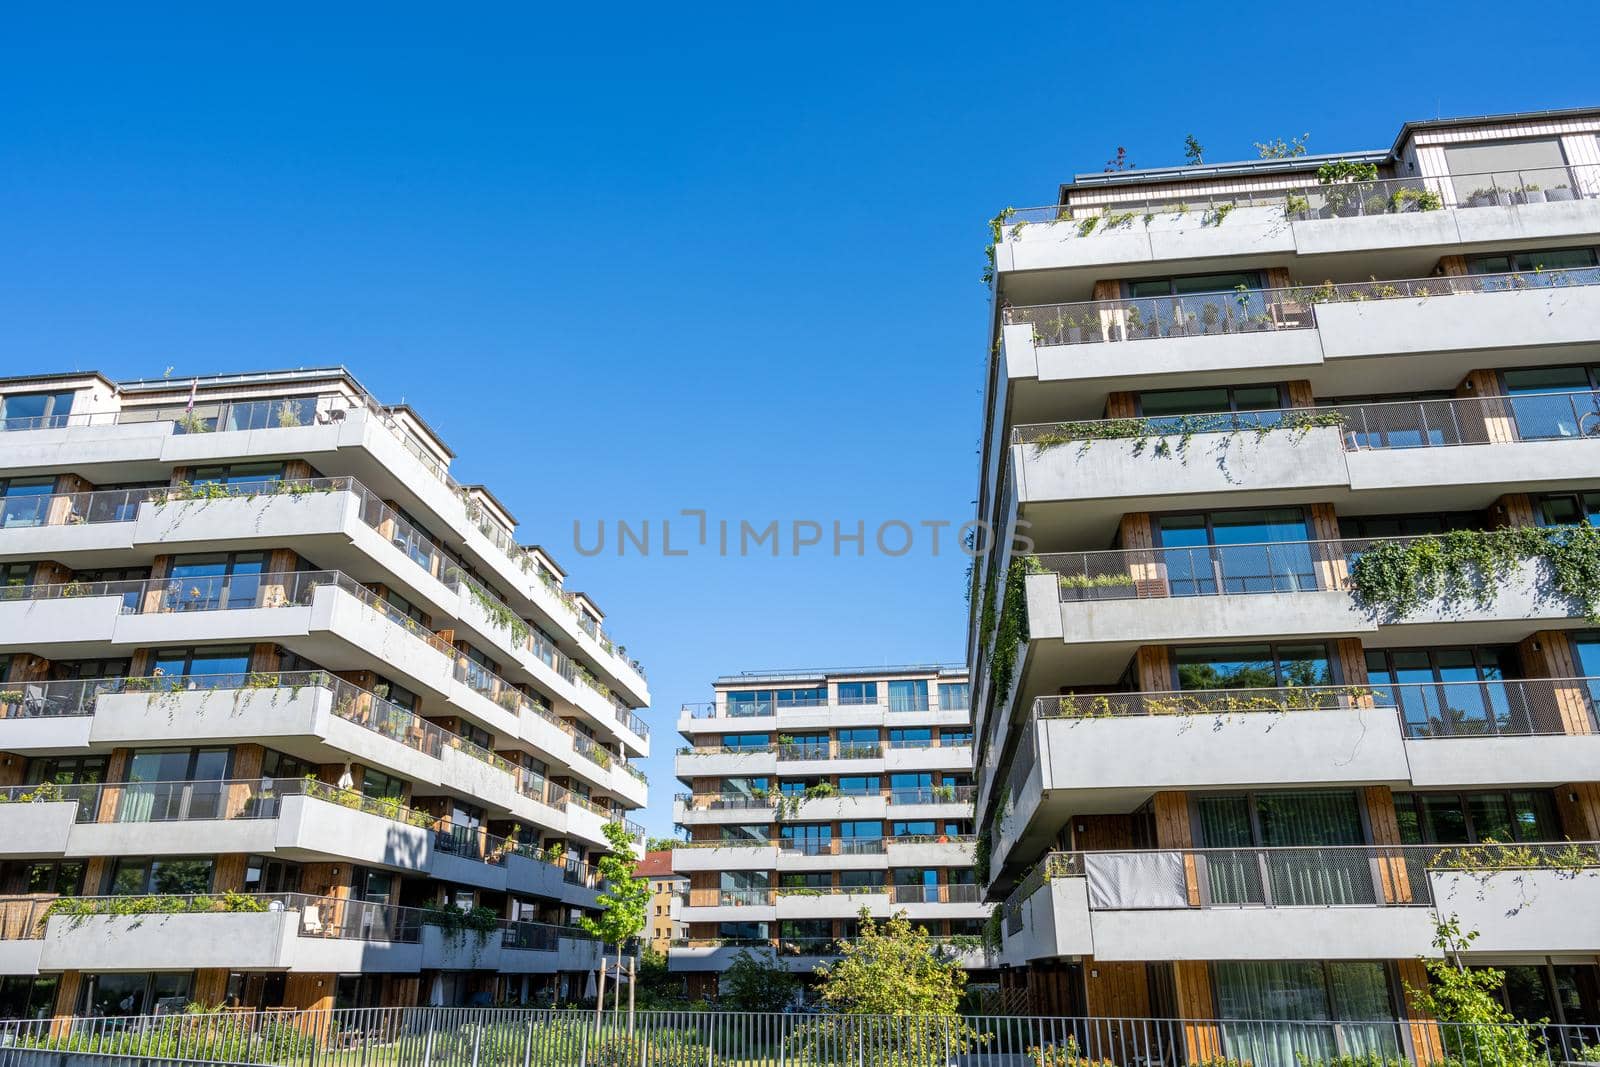 Modern apartment buildings with a concrete facade by elxeneize